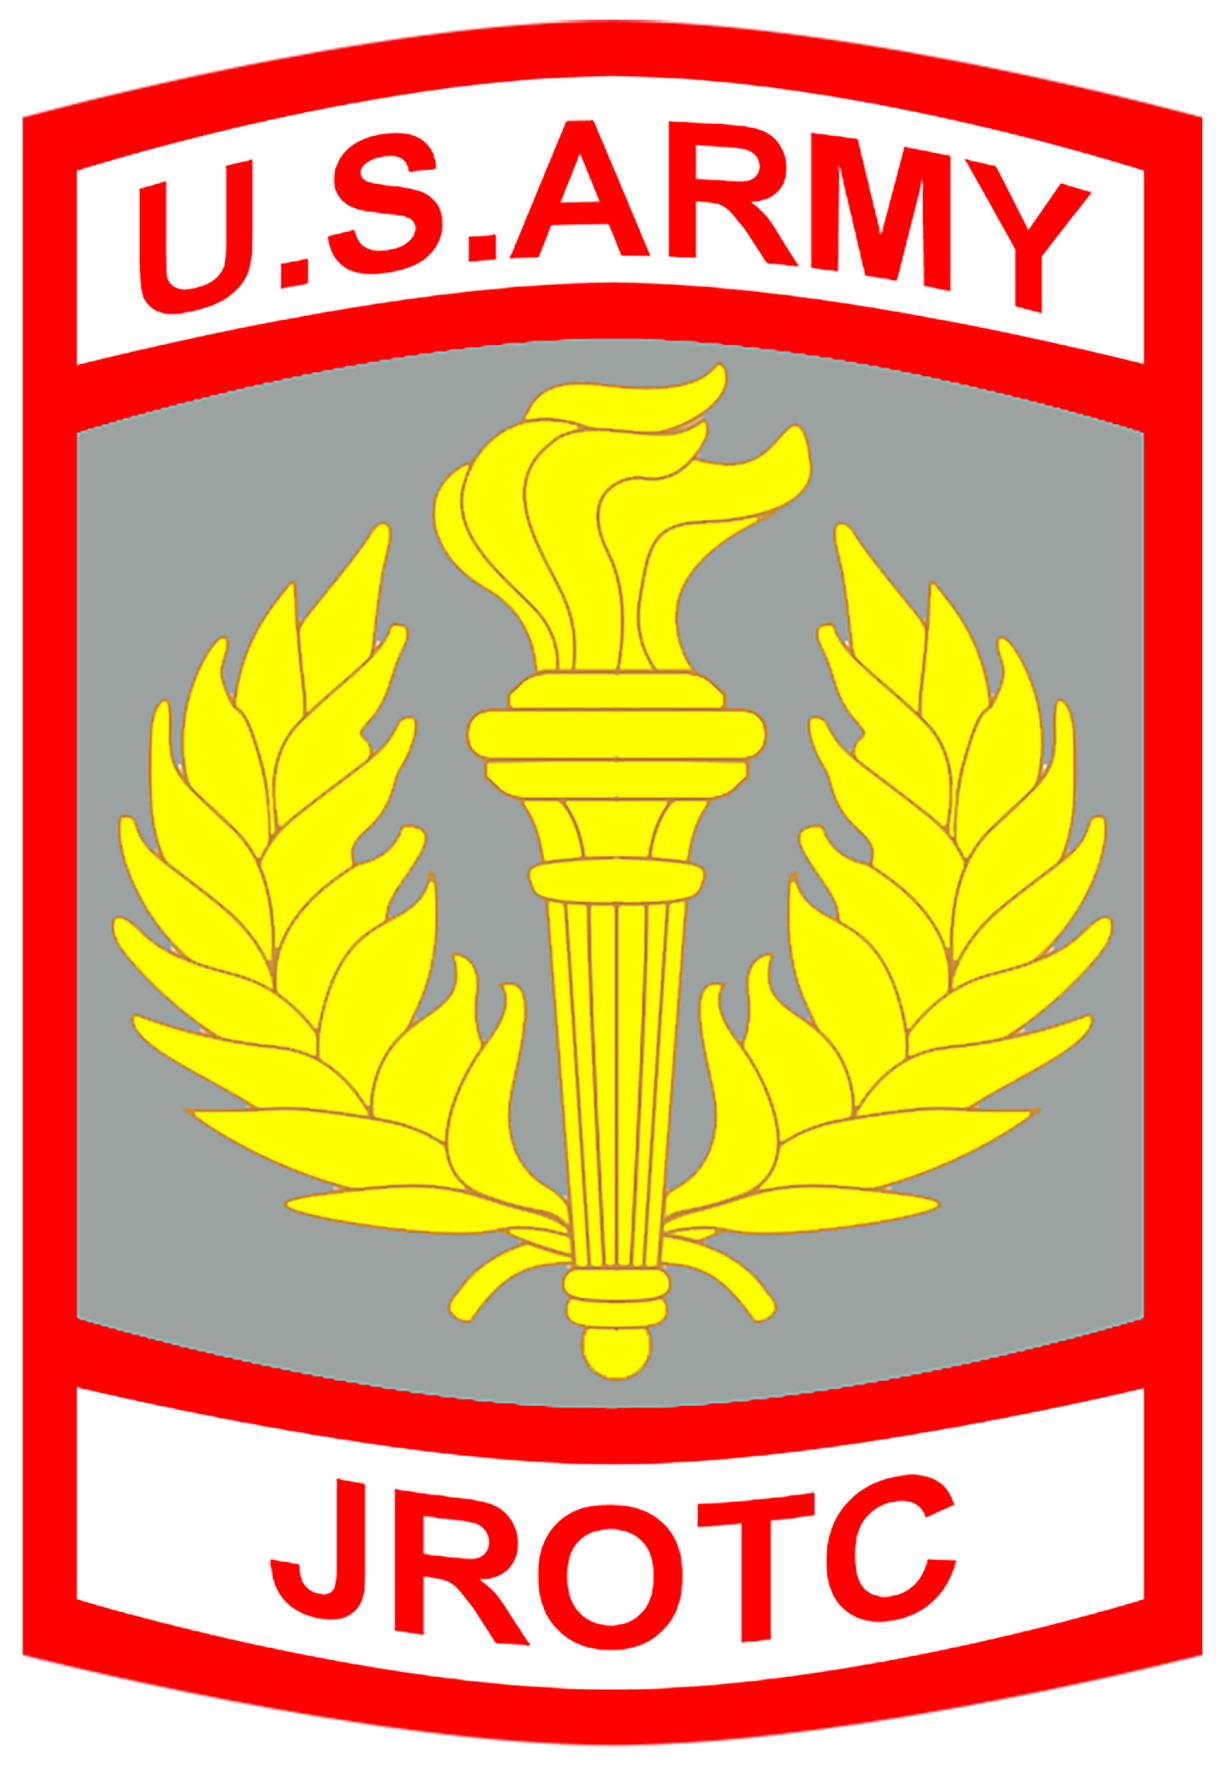 U.S. Army JROTC logo